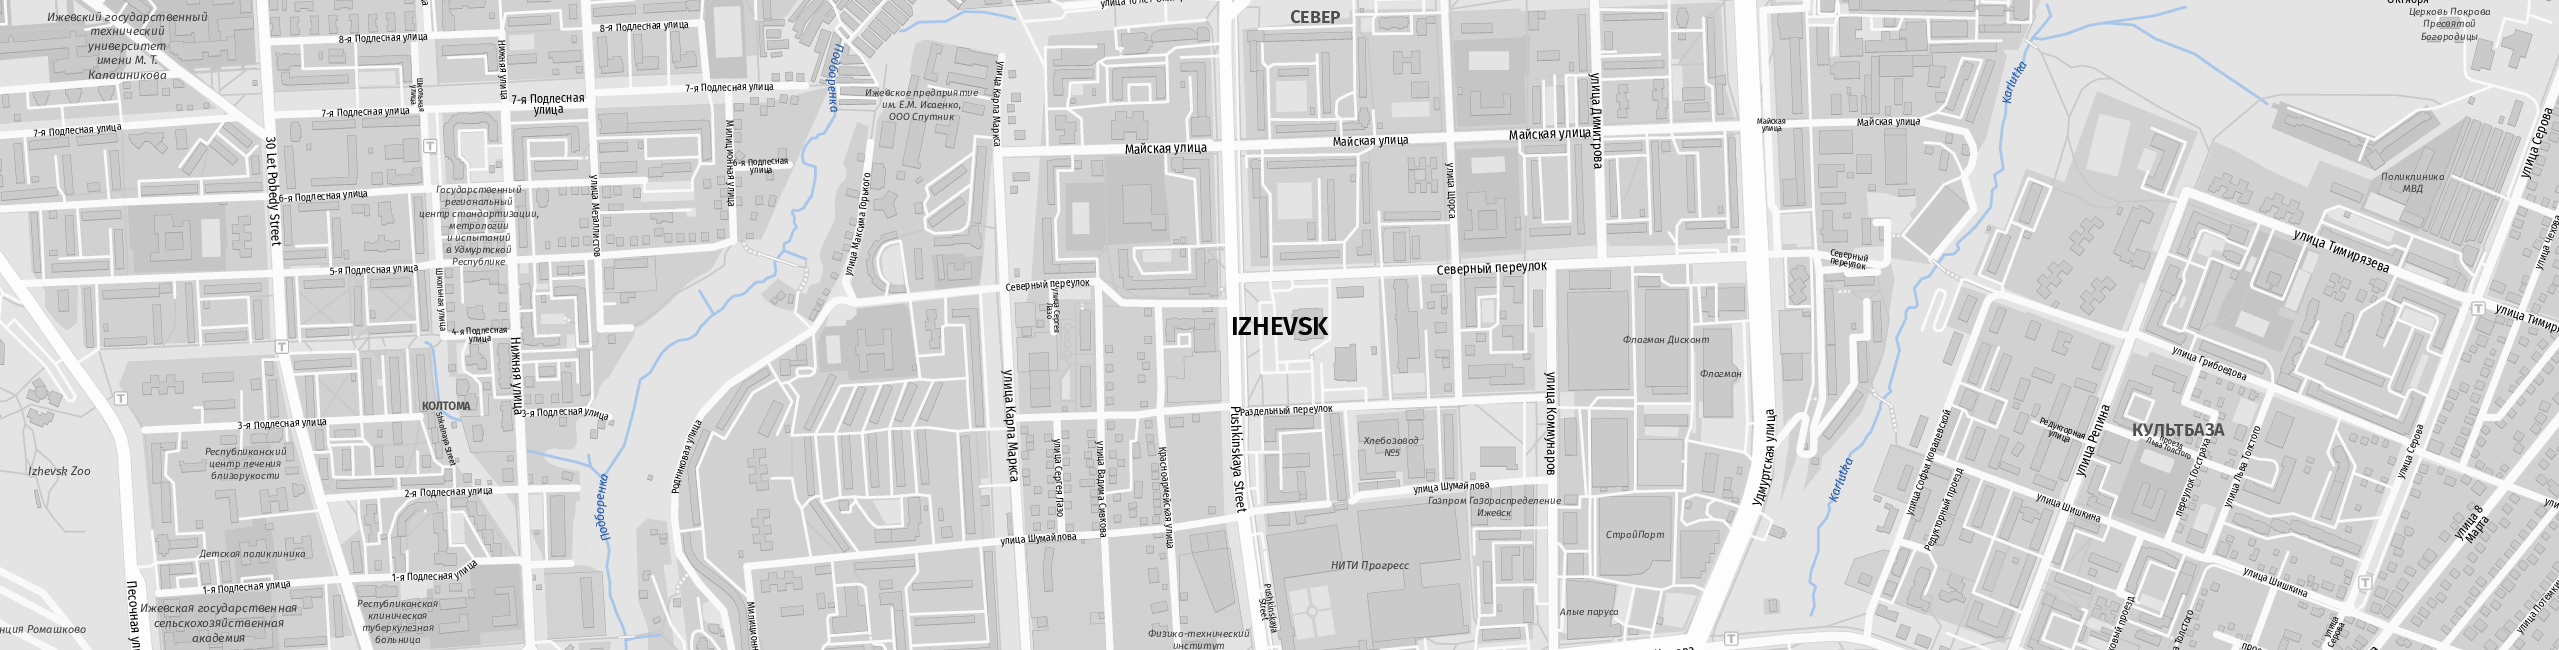 Stadtplan Ischewsk zum Downloaden.